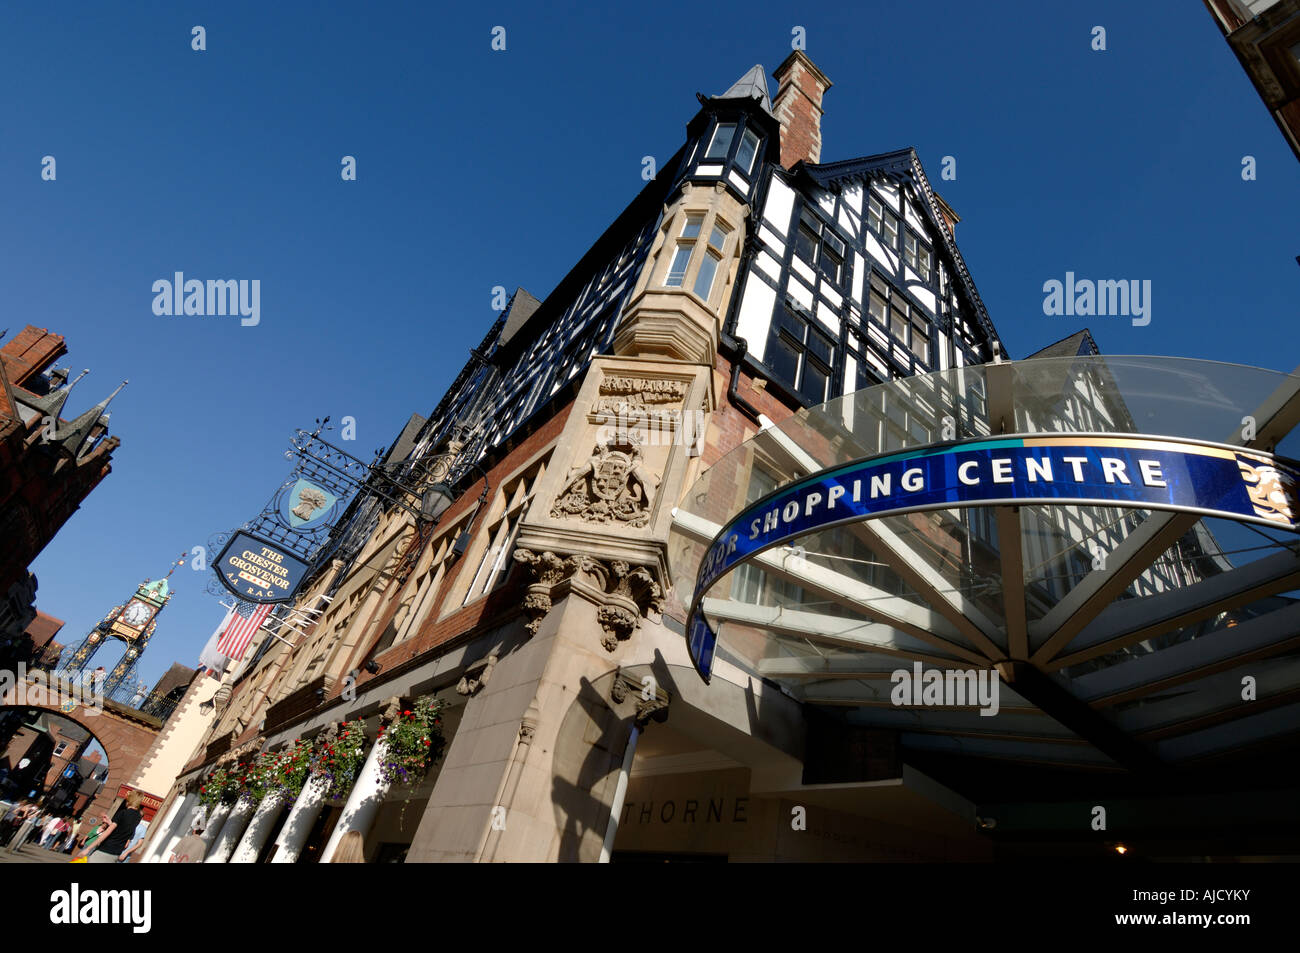 Grosvenor Hotel and Grosvenor Shopping Centre Eastgate Street Chester Cheshire England UK Stock Photo